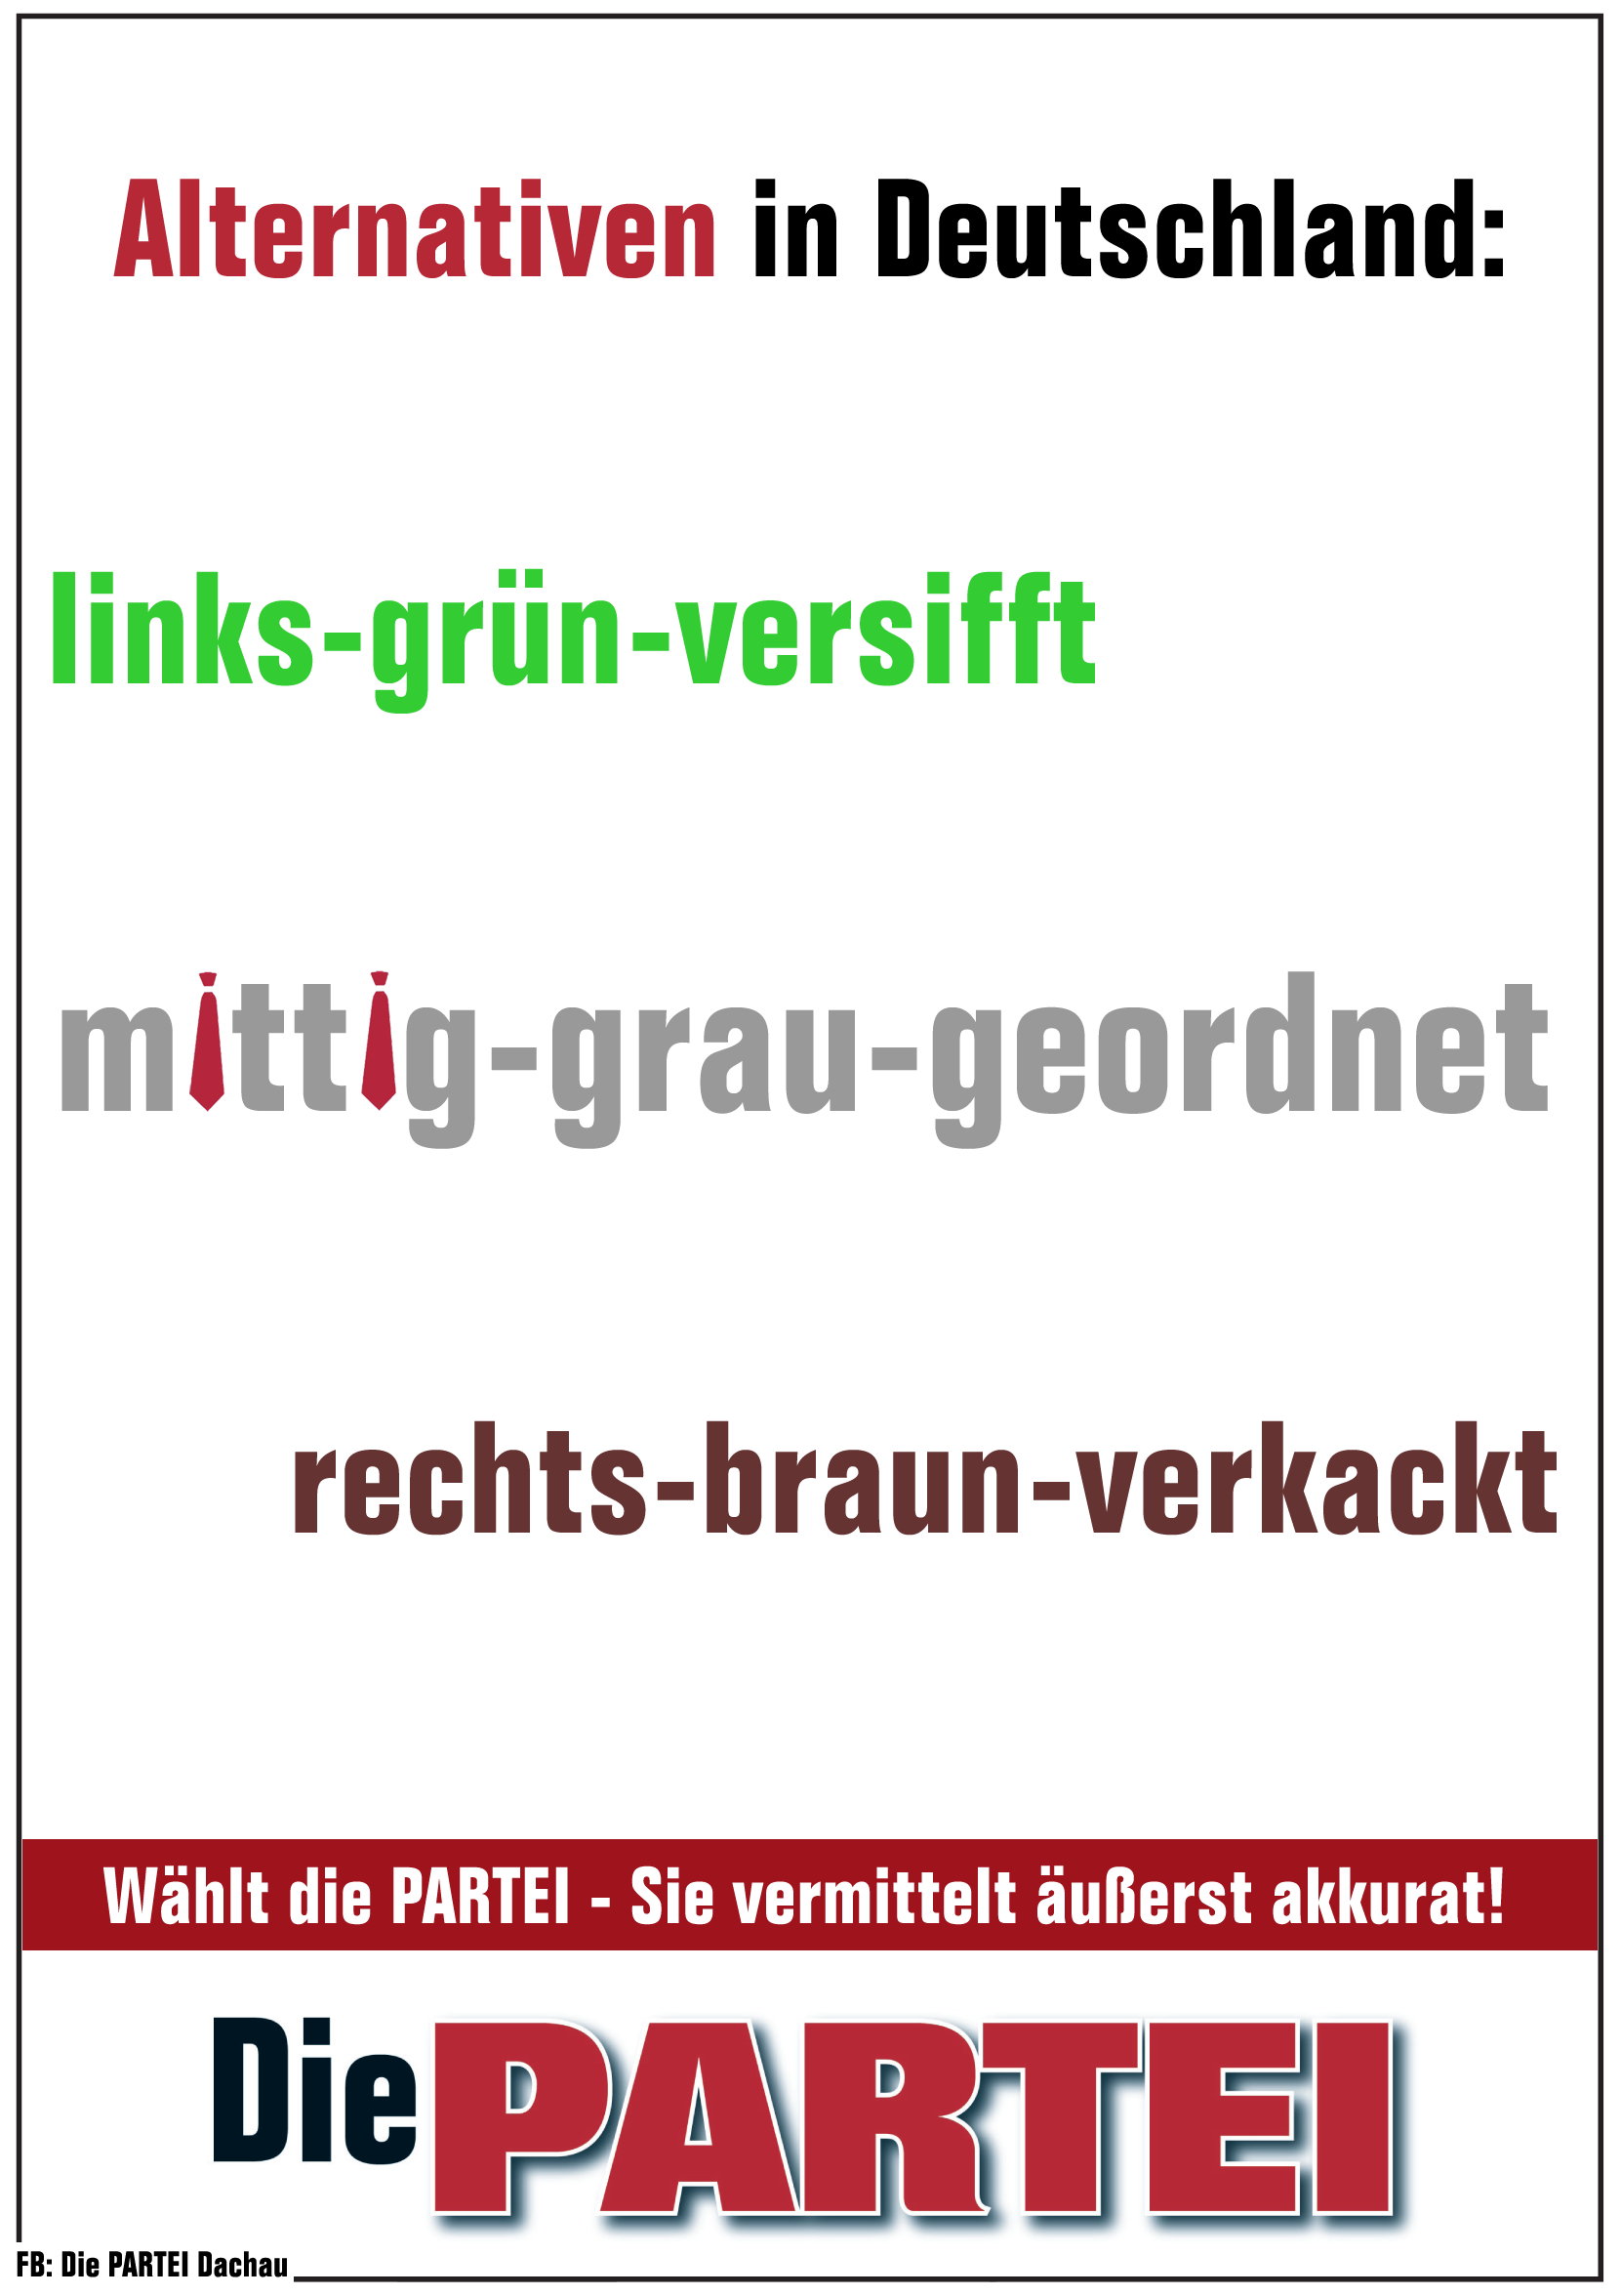 PARTEIPlakat_'Links-grün-versifft'.png
                                - 1661x2352 - 204 KB